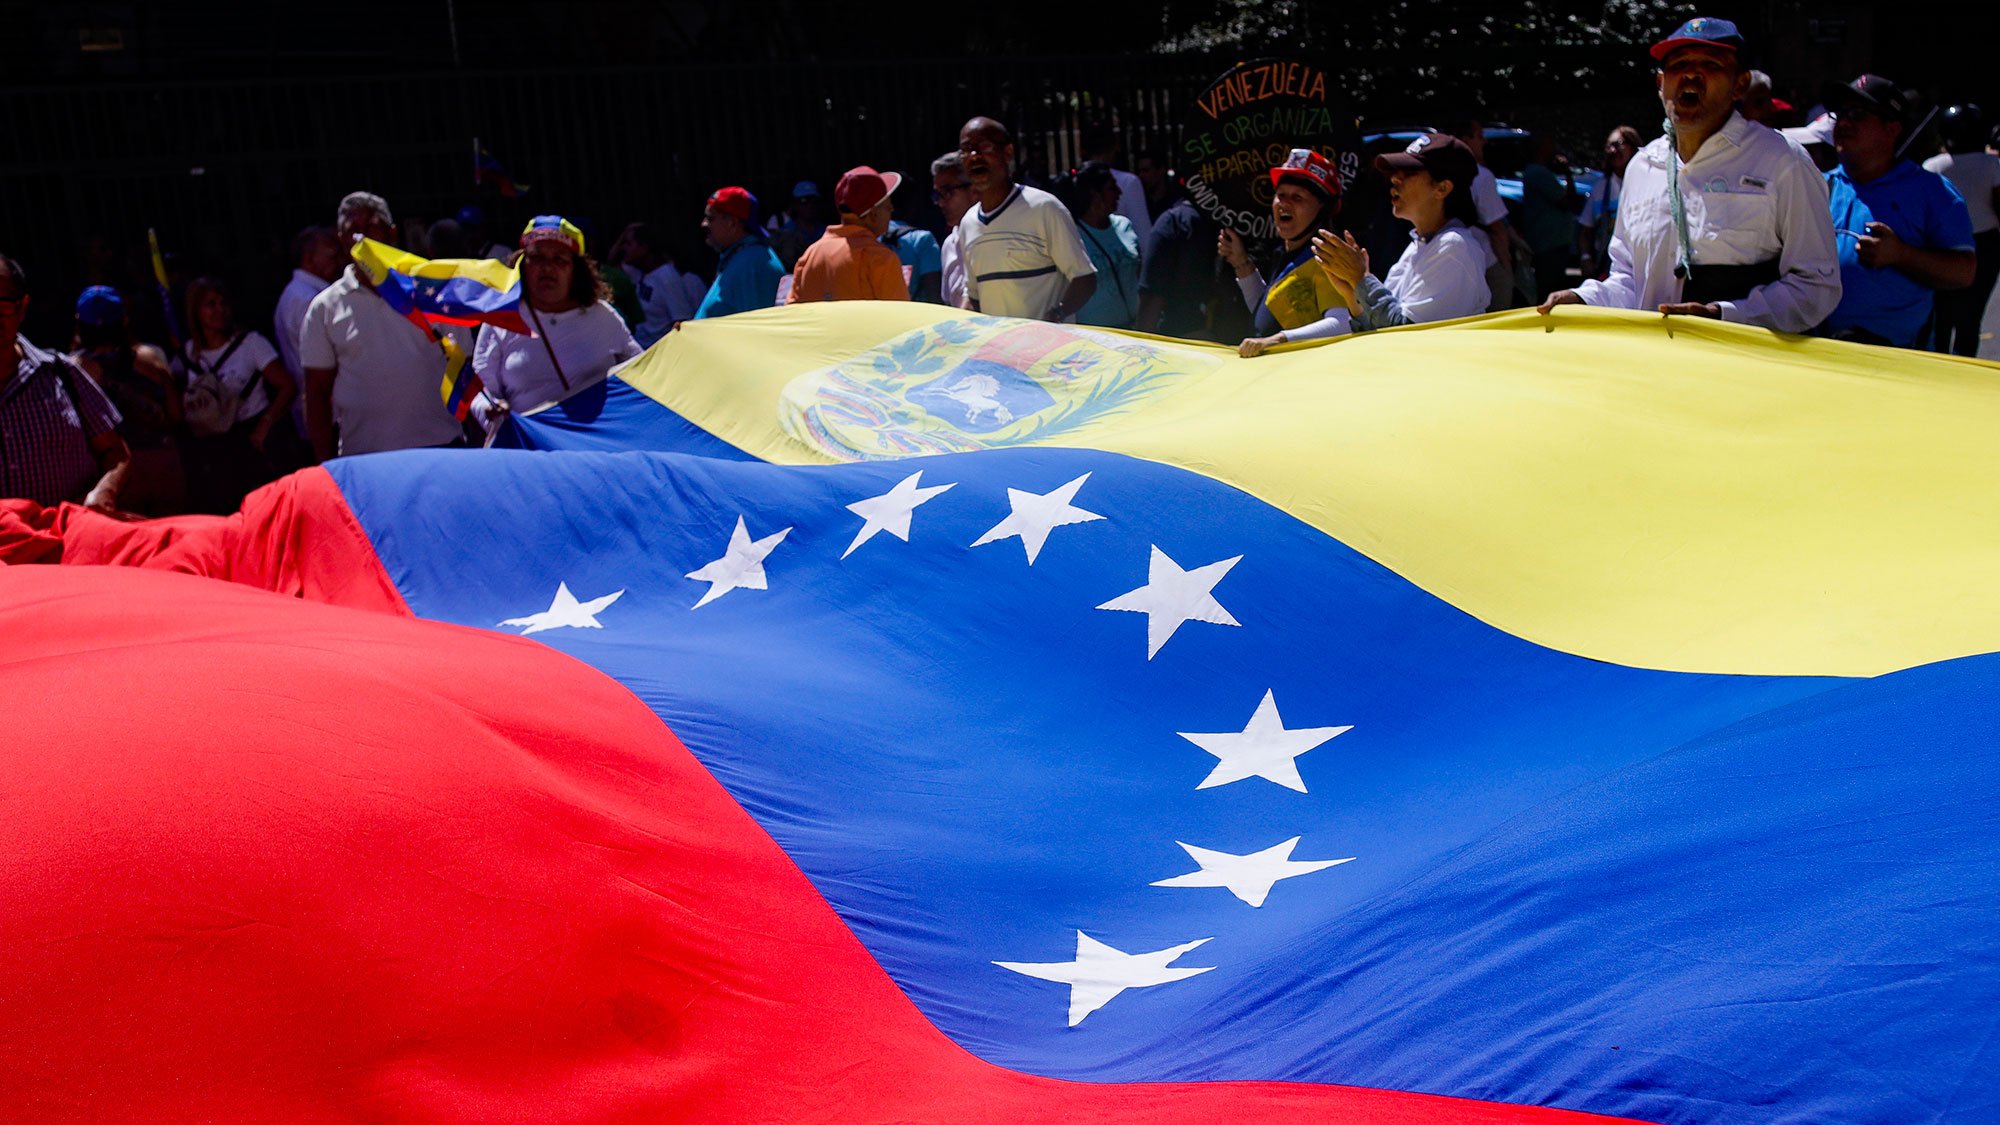 Fiscal de Venezuela informa que cuatro opositores fueron imputados y permanecerán privados de libertad; oposición denuncia persecución